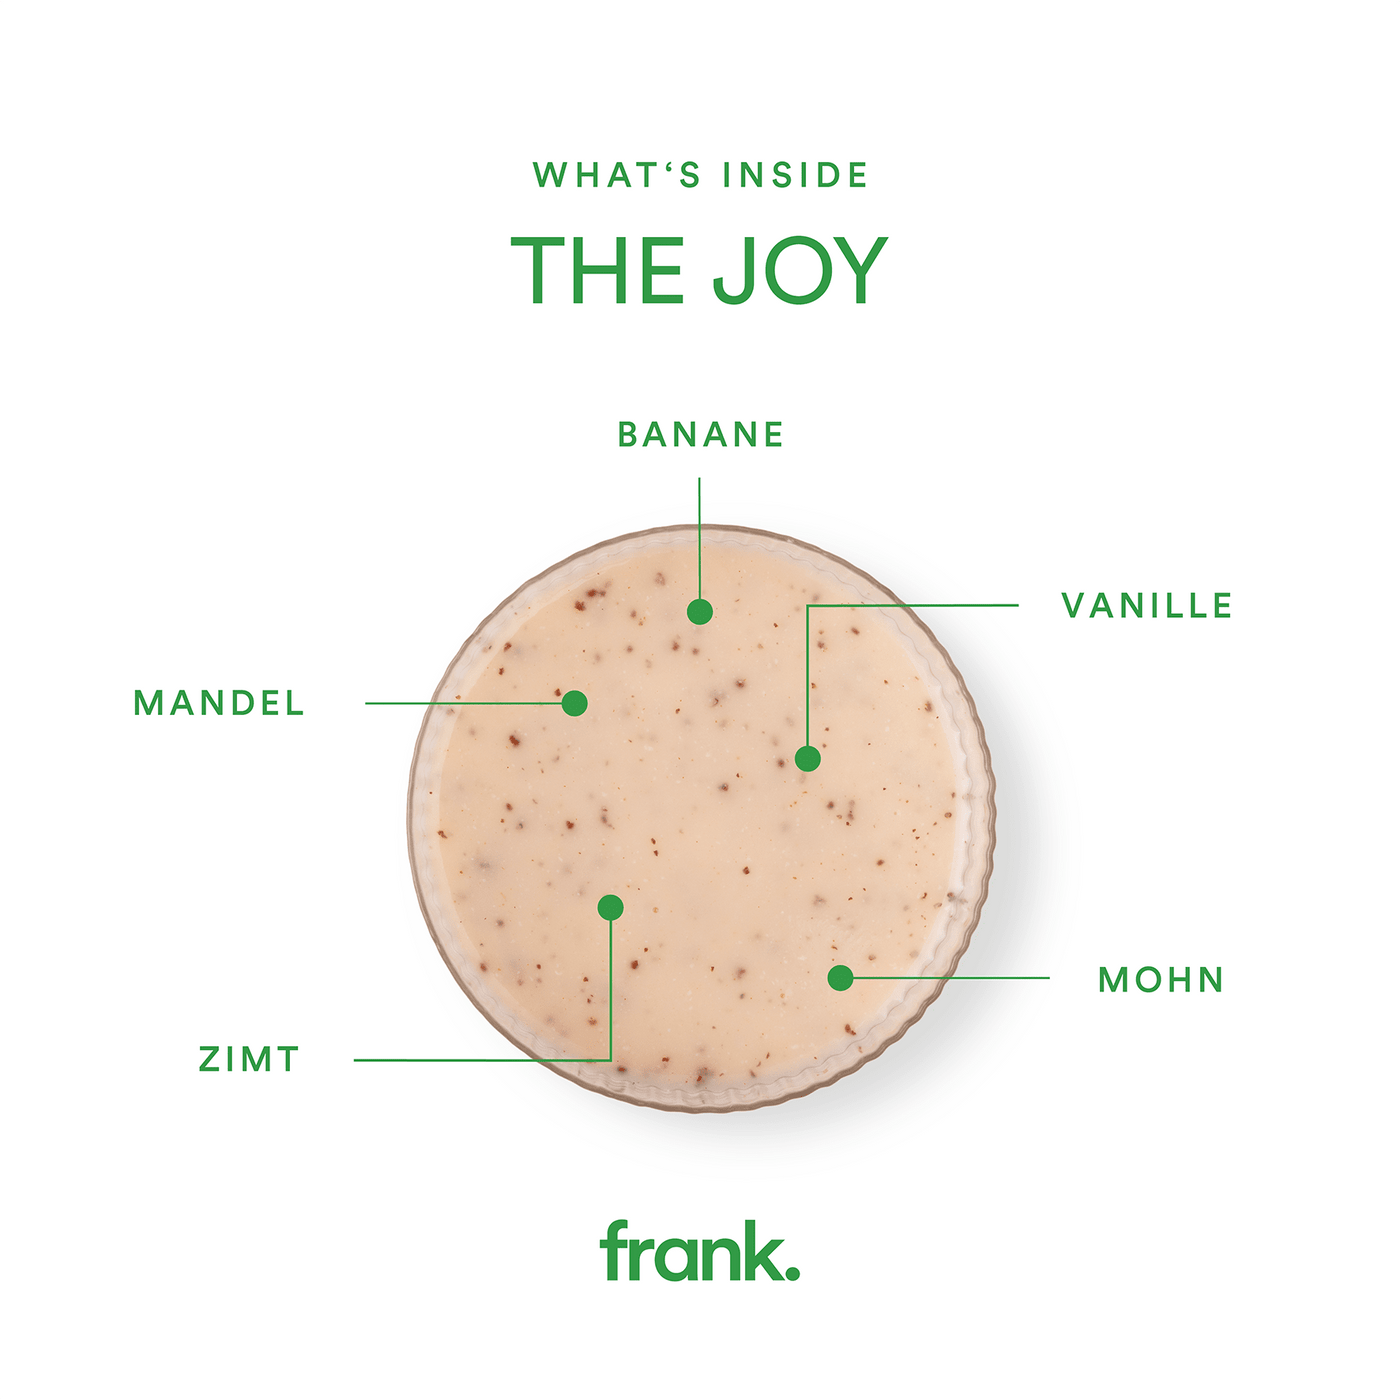 Darstellung des Saft The Joy mit Banane, Mohn, Marzipan, Vanille, Zimt und Agave in einem Glas von frank